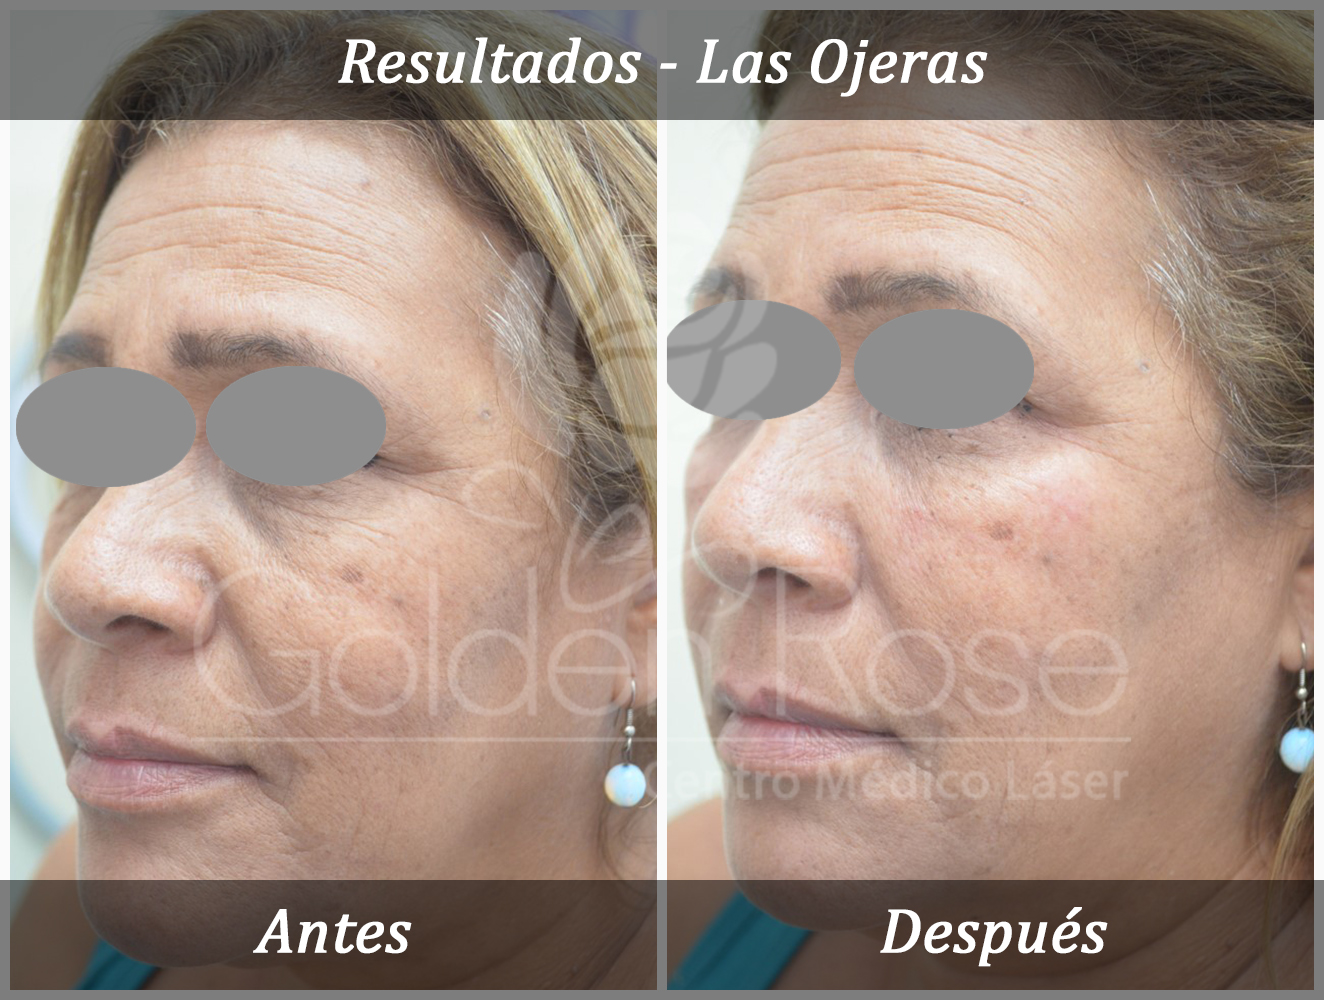 Results - Las Ojeras 3.jpg